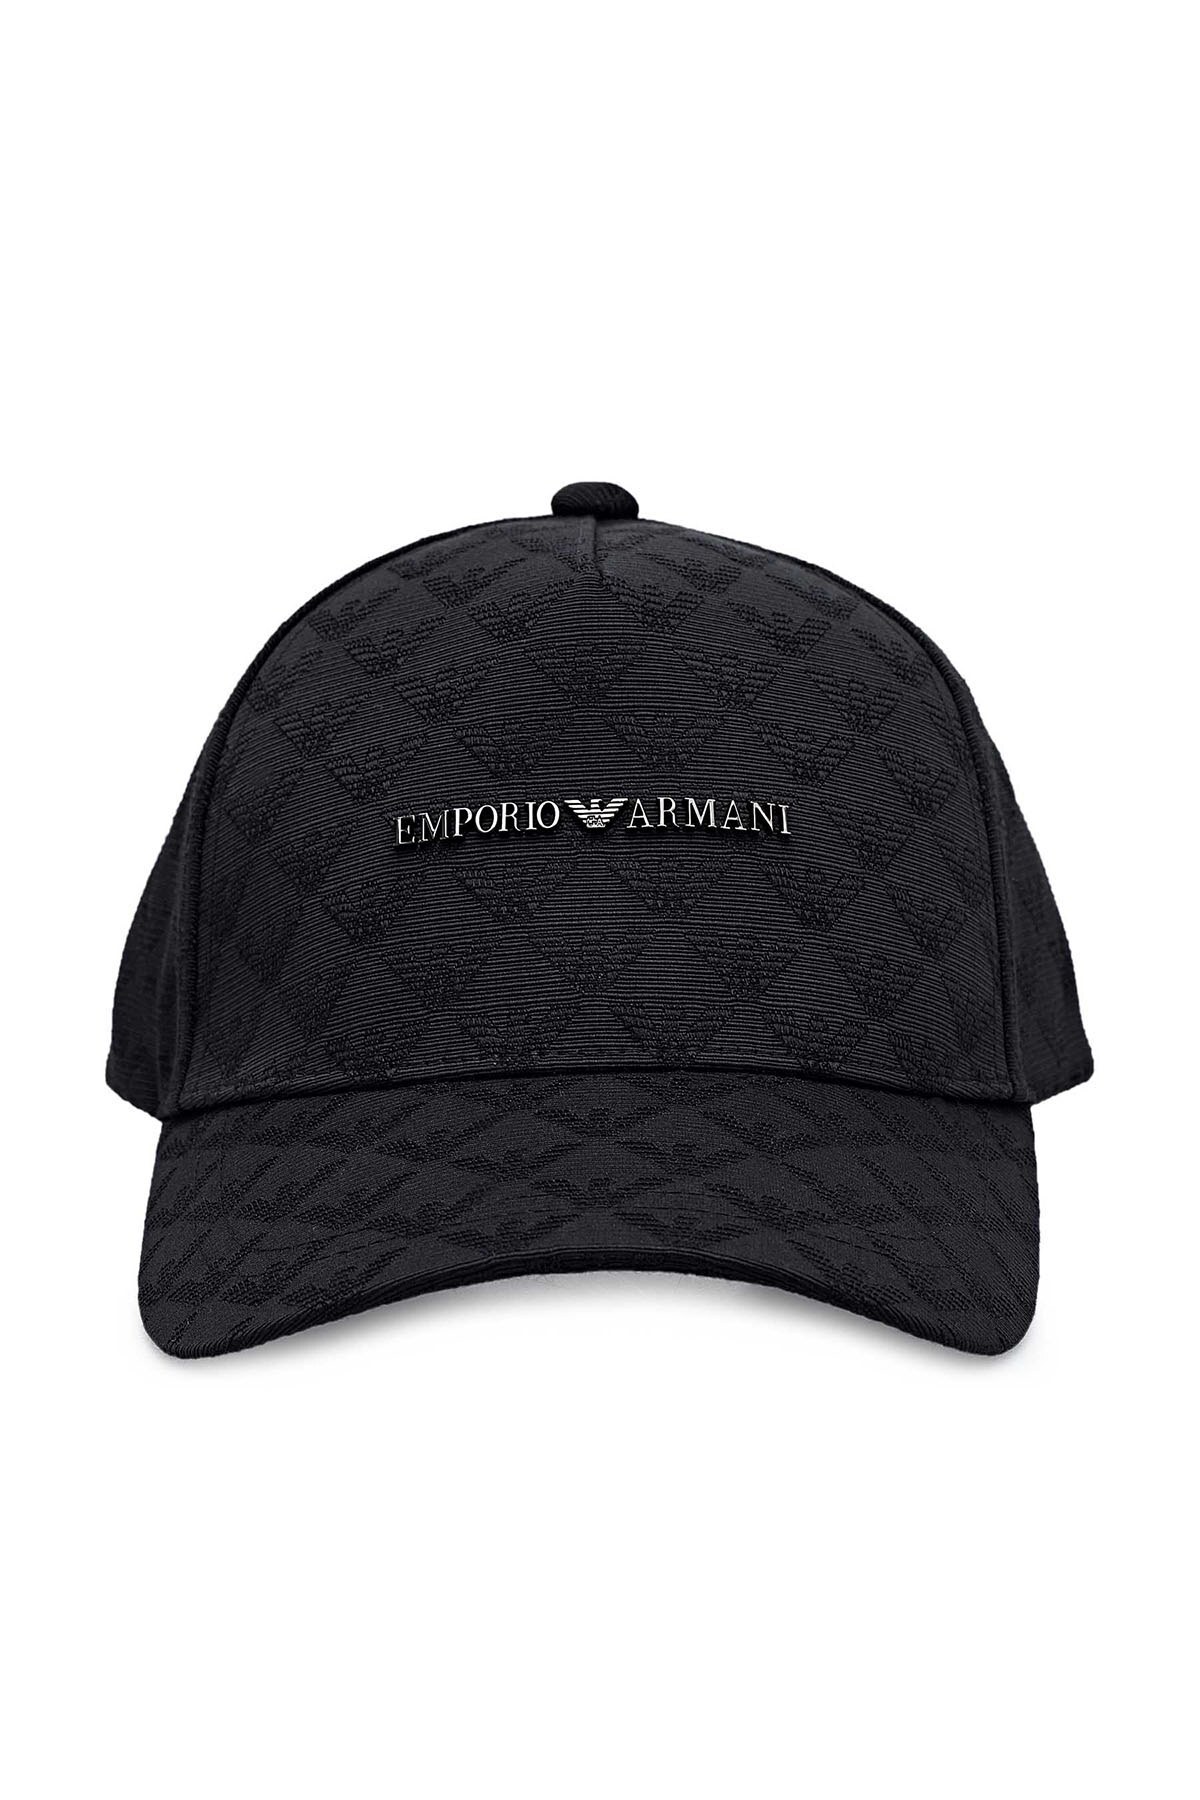 Emporio Armani Logo Baskılı Erkek Şapka 627567 1P557 00020 SİYAH